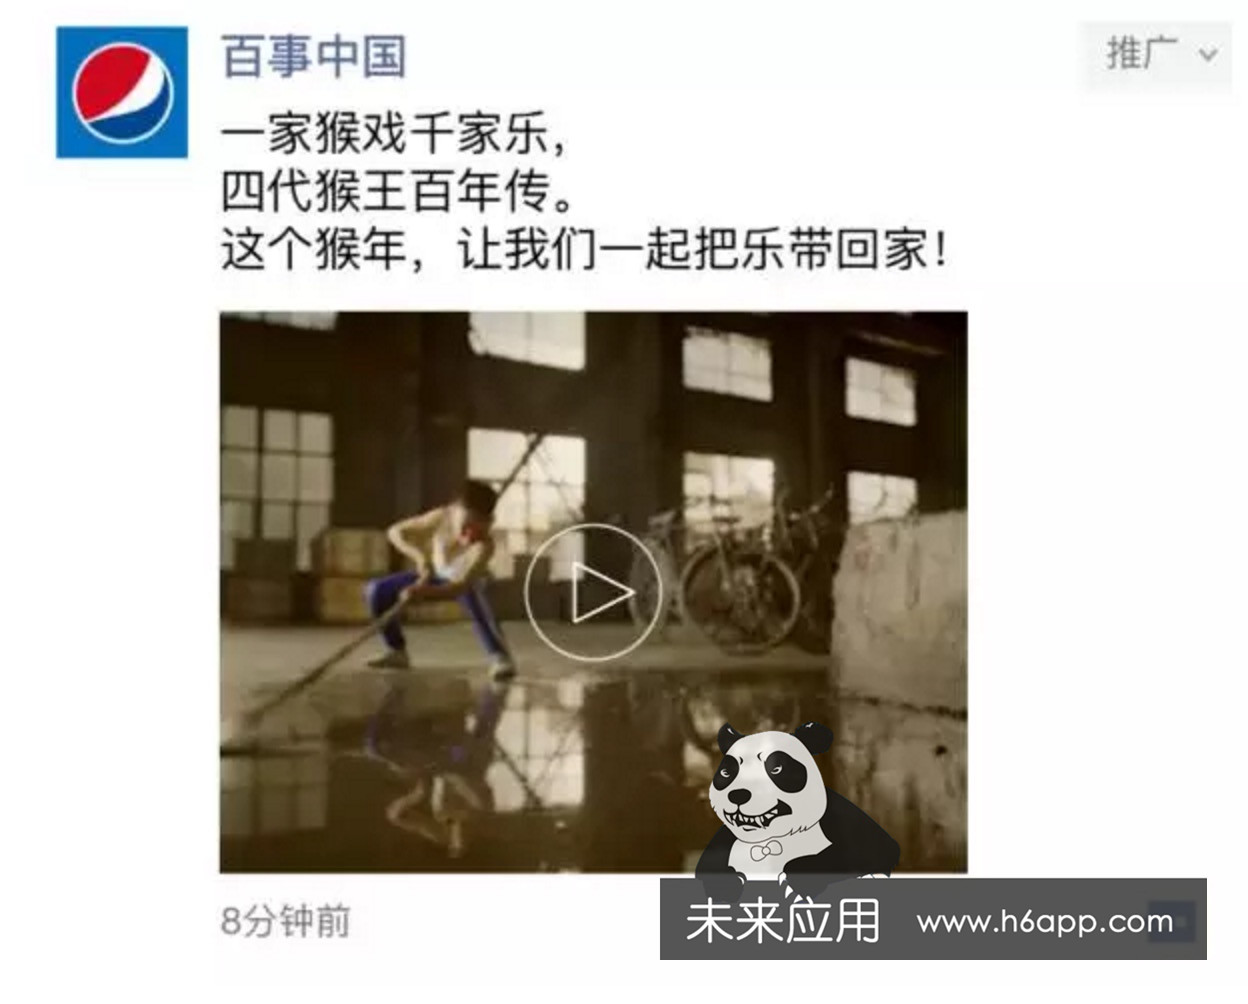 微信朋亚星体育友圈广告营销案例：百事 “猴王戏”(图1)